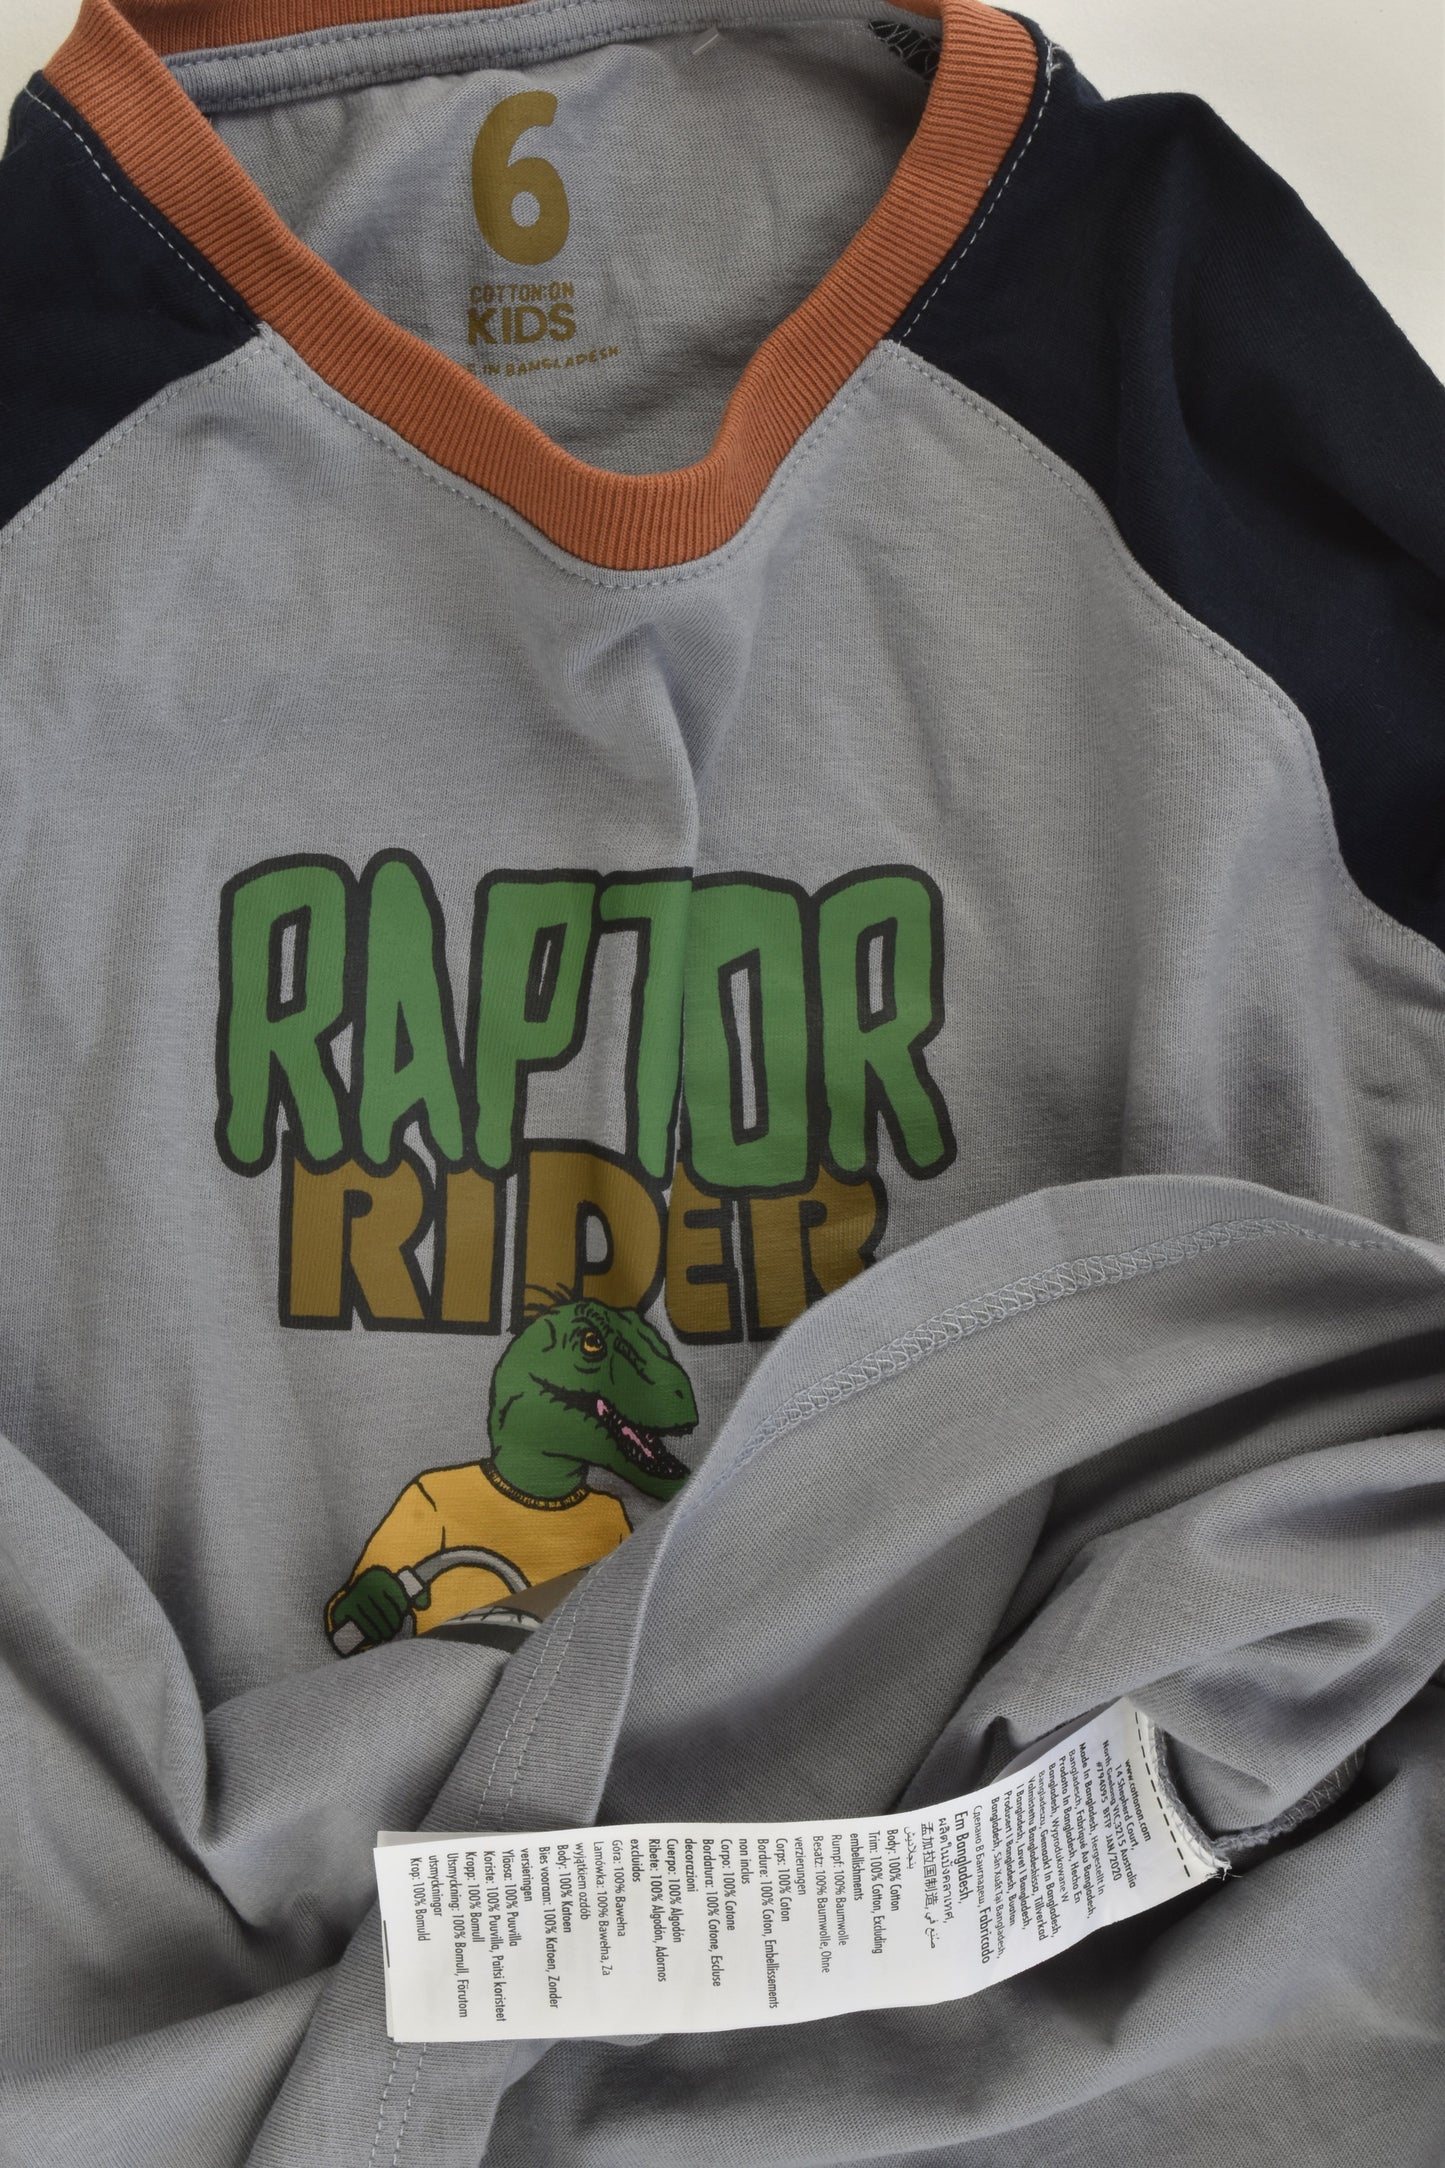 Cotton On Kids Size 6 'Raptor Rider' Top